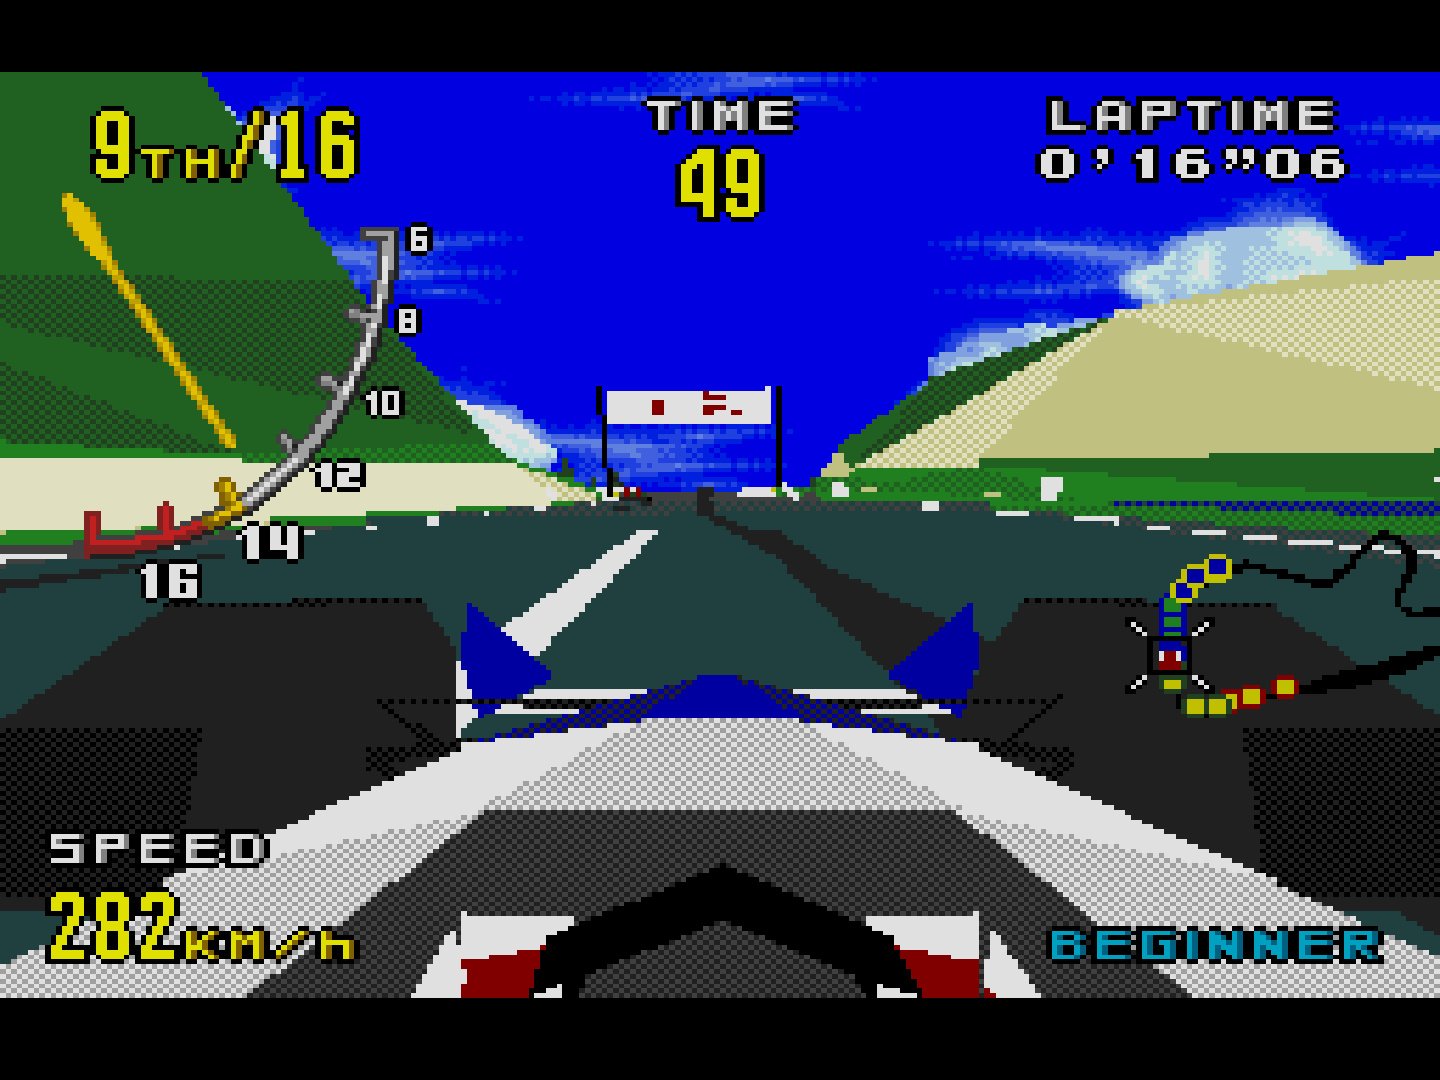 Virtua Racing : la révolution de la course virtuelle, de l'arcade à la SEGA  Mega Drive !